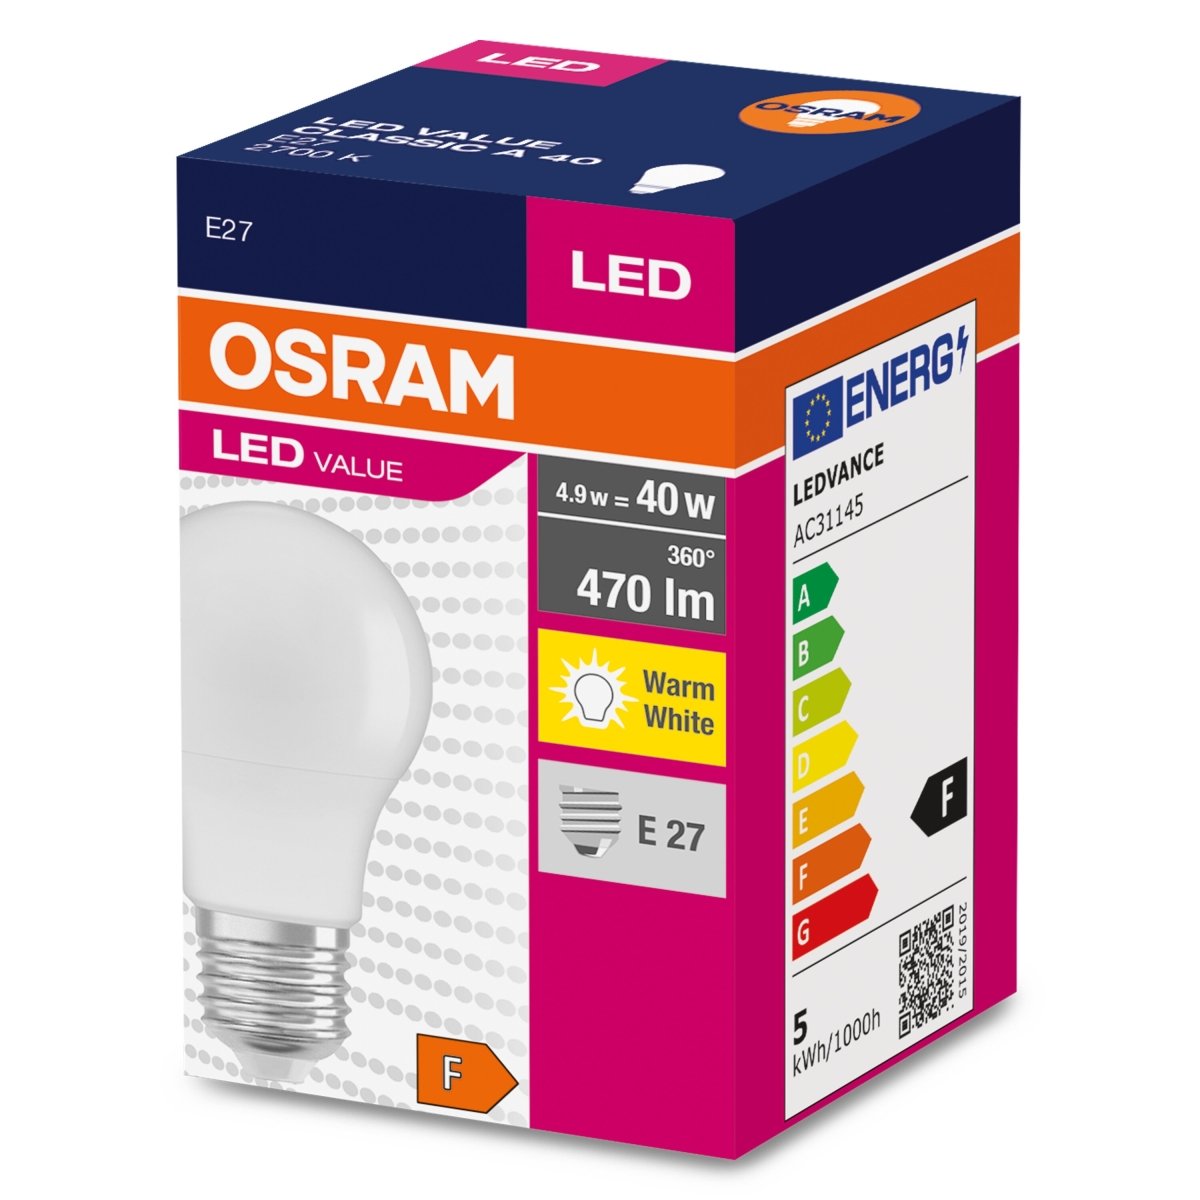 Żarówka LED CLA E27 4,9W LED VALUE OSRAM matowa, odpowiednik 40W, barwa ciepła, 1 szt. - eshop LEDVANCE 4052899326927